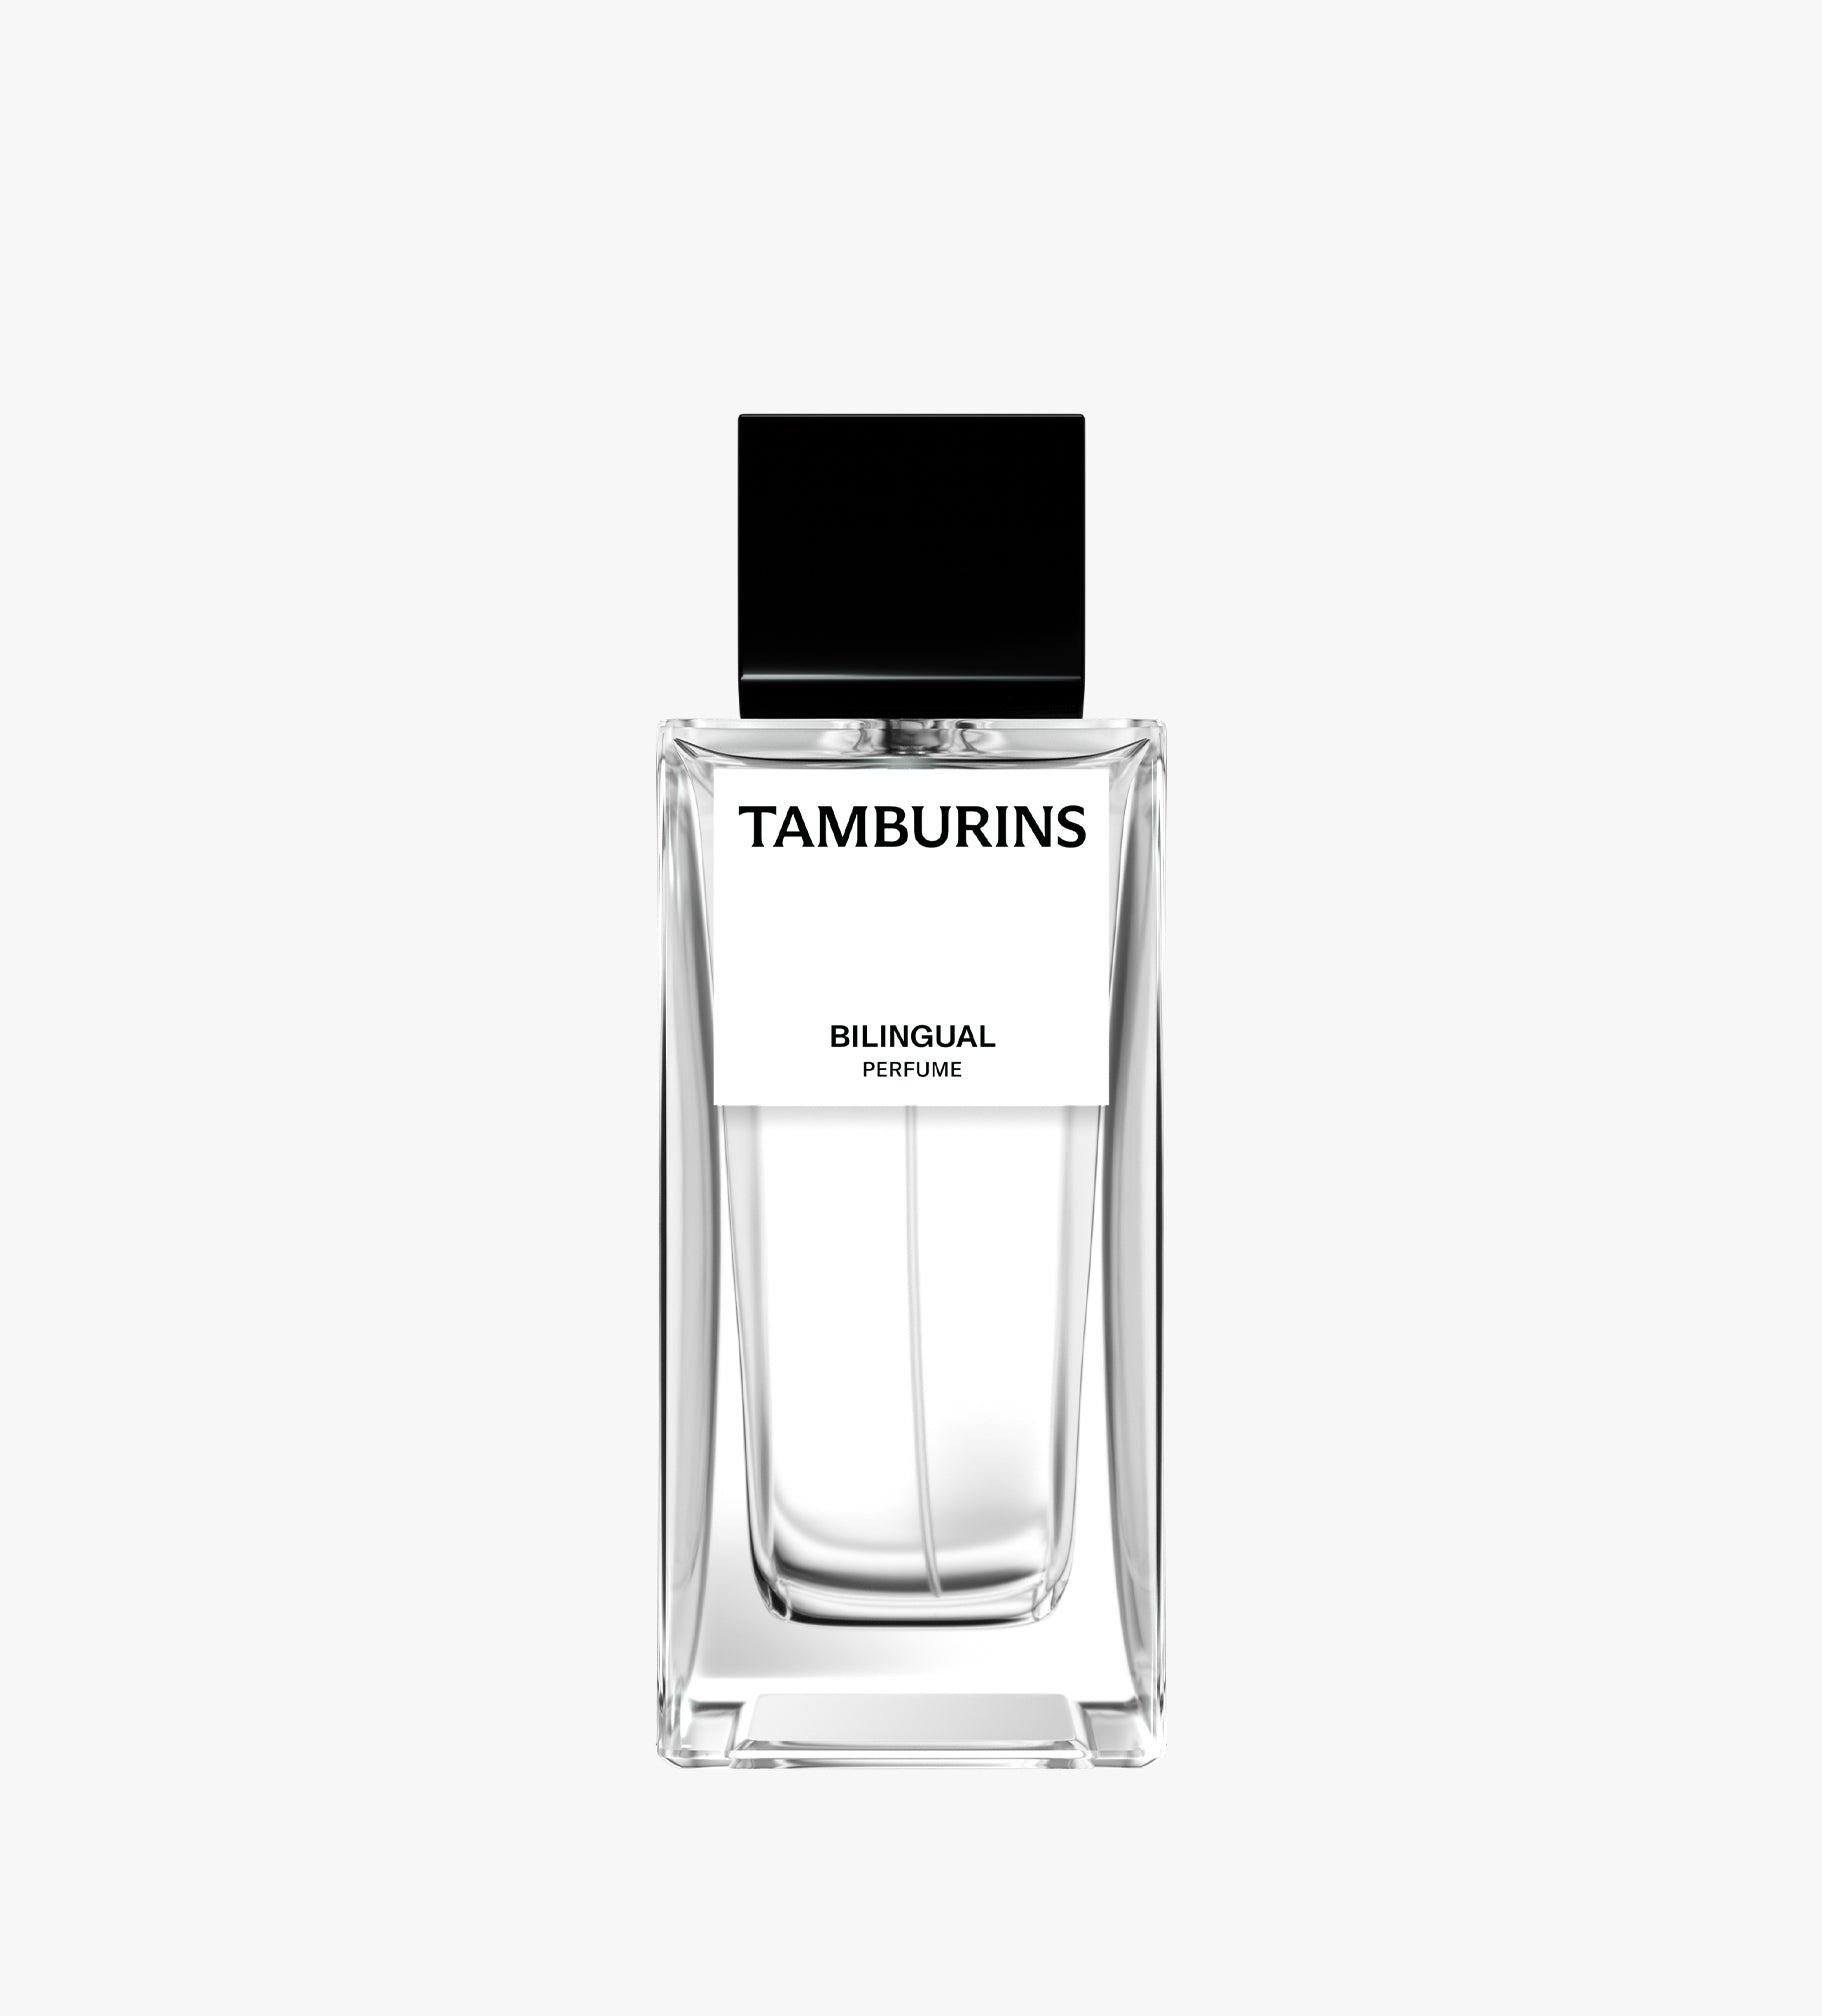 Tamburins Perfume - Bilingual